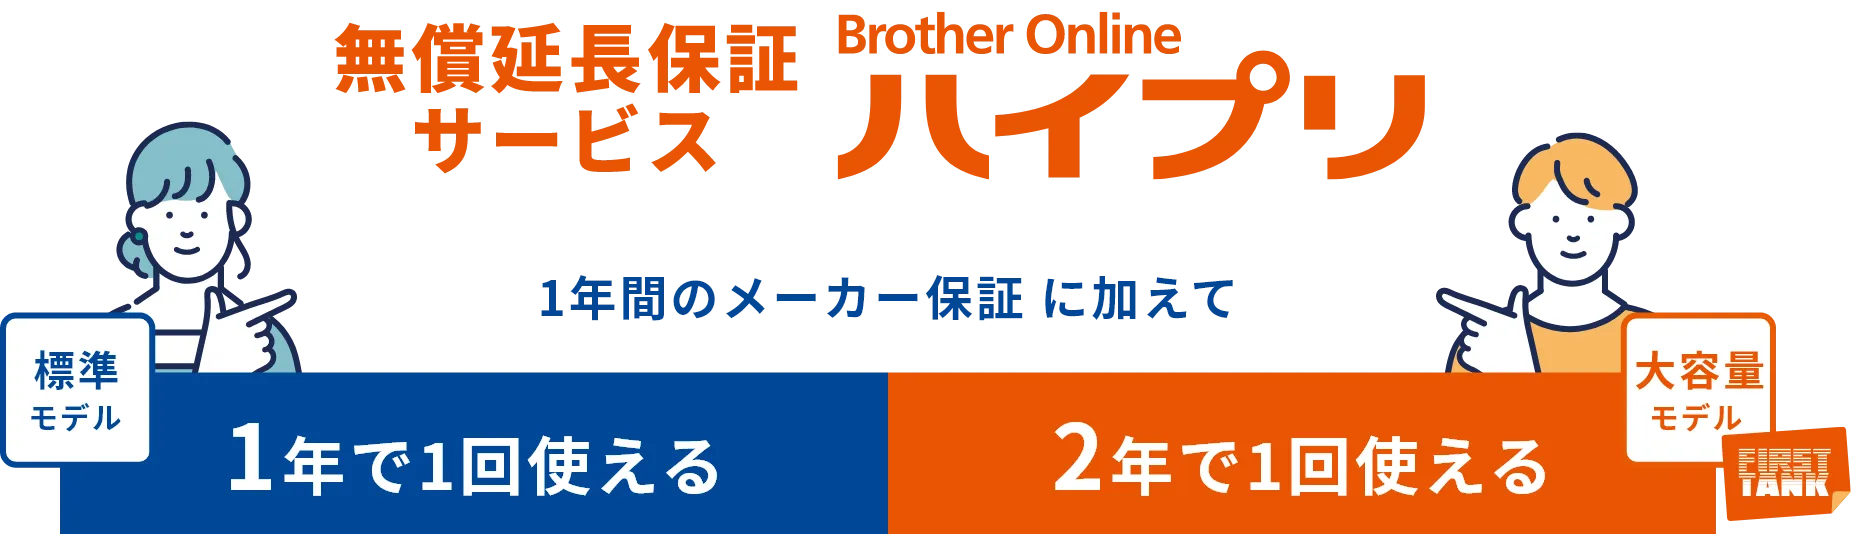 無償延長保証サービス Brother Online ハイプリ